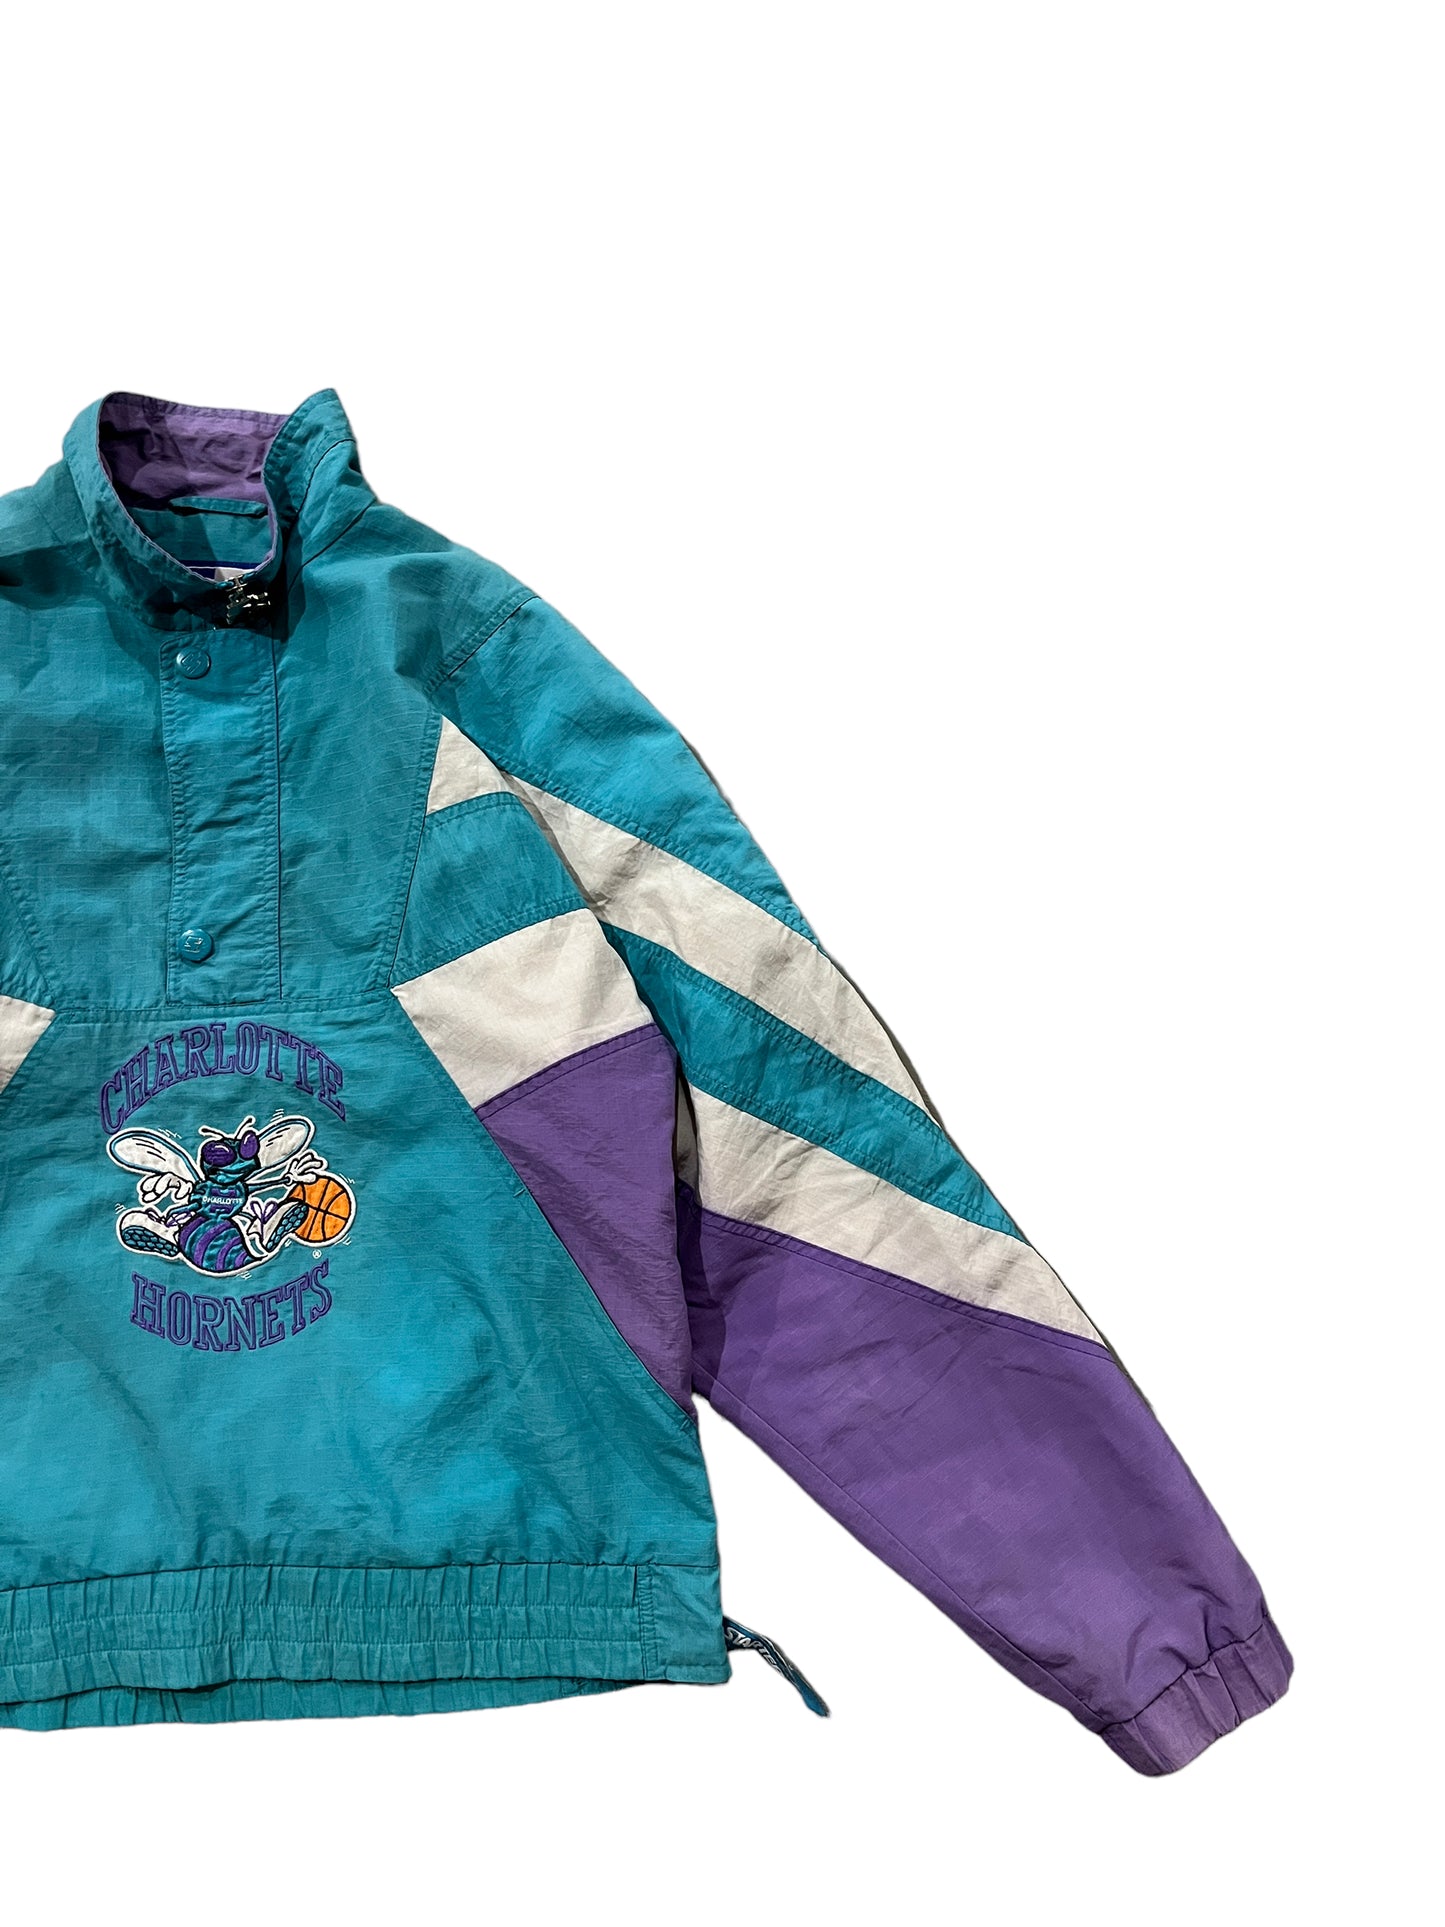 Vintage Starter Charlotte Hornets Half Zip Jacket